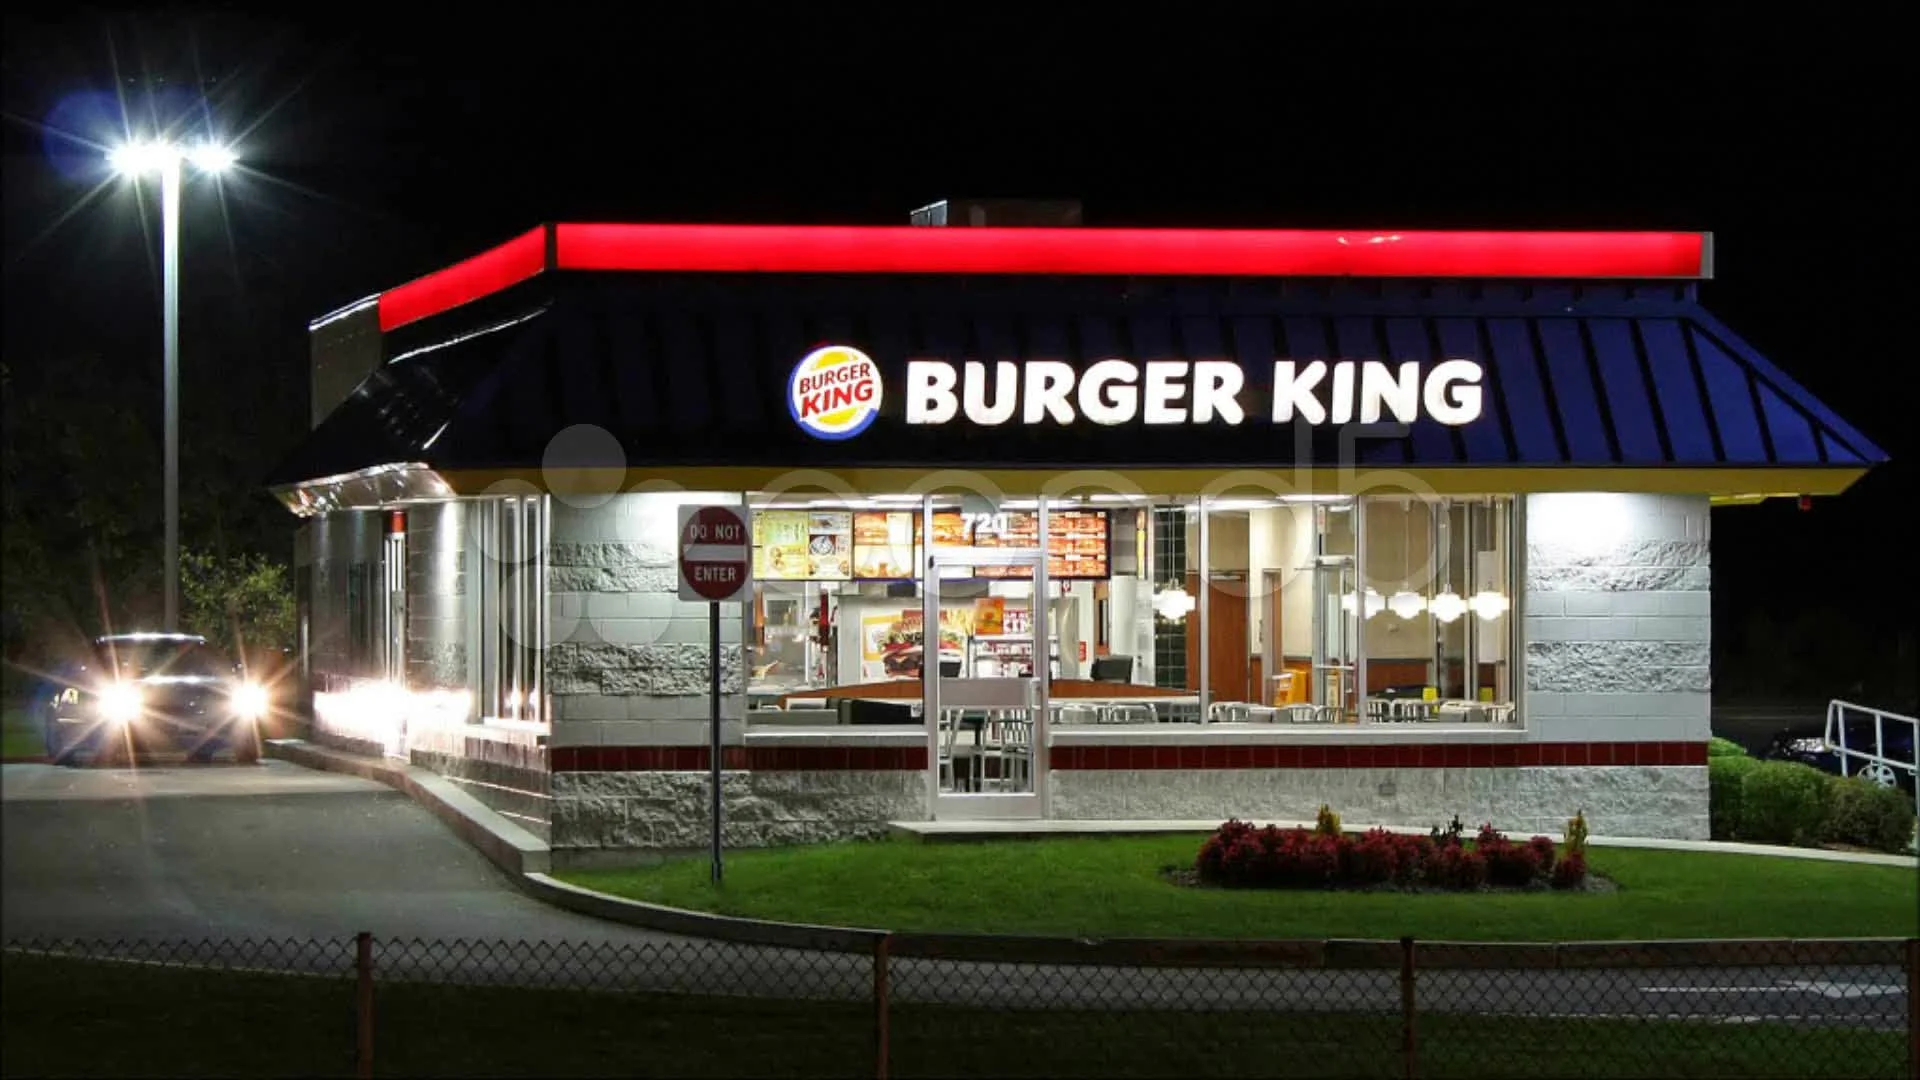 burger-king-restaurant-night-time-018155778-prevstill.webp